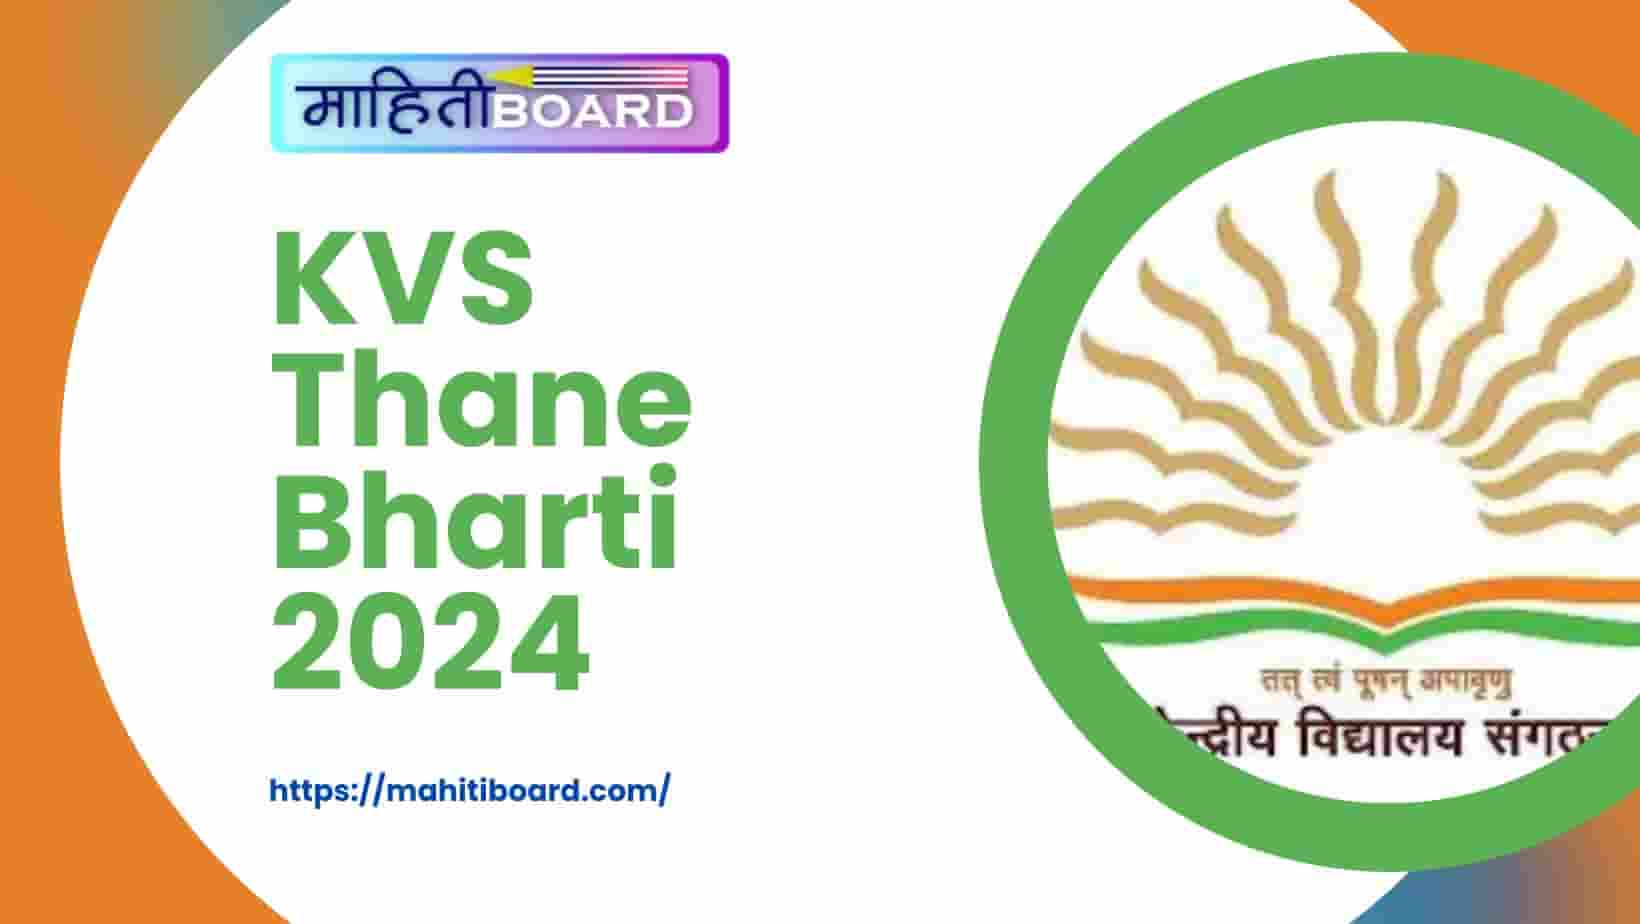 KVS Thane Bharti 2024